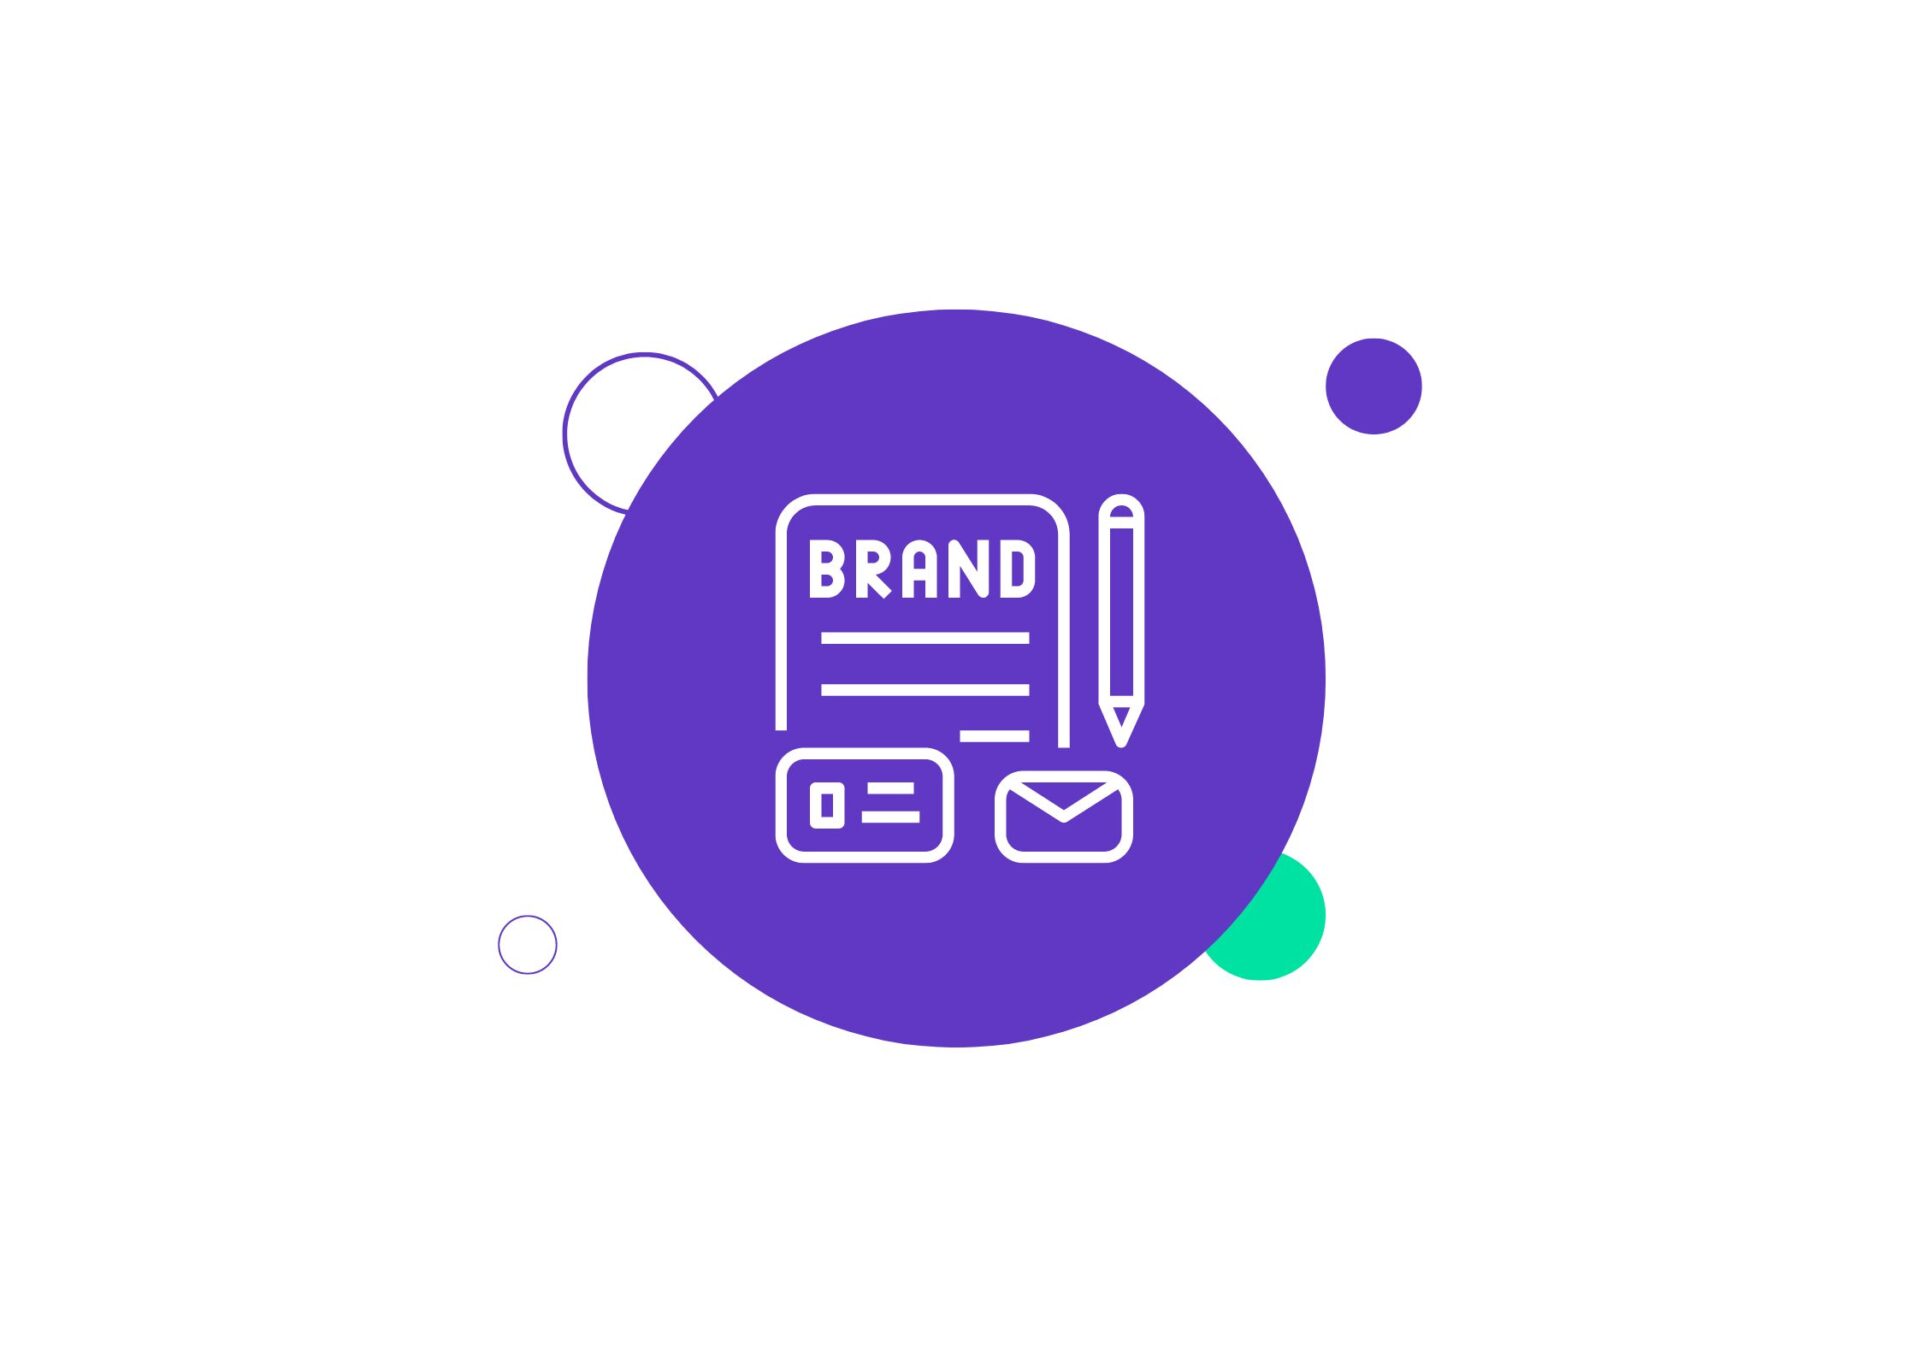 Identyfikacja wizualna marki - logo, czcionki, kolory